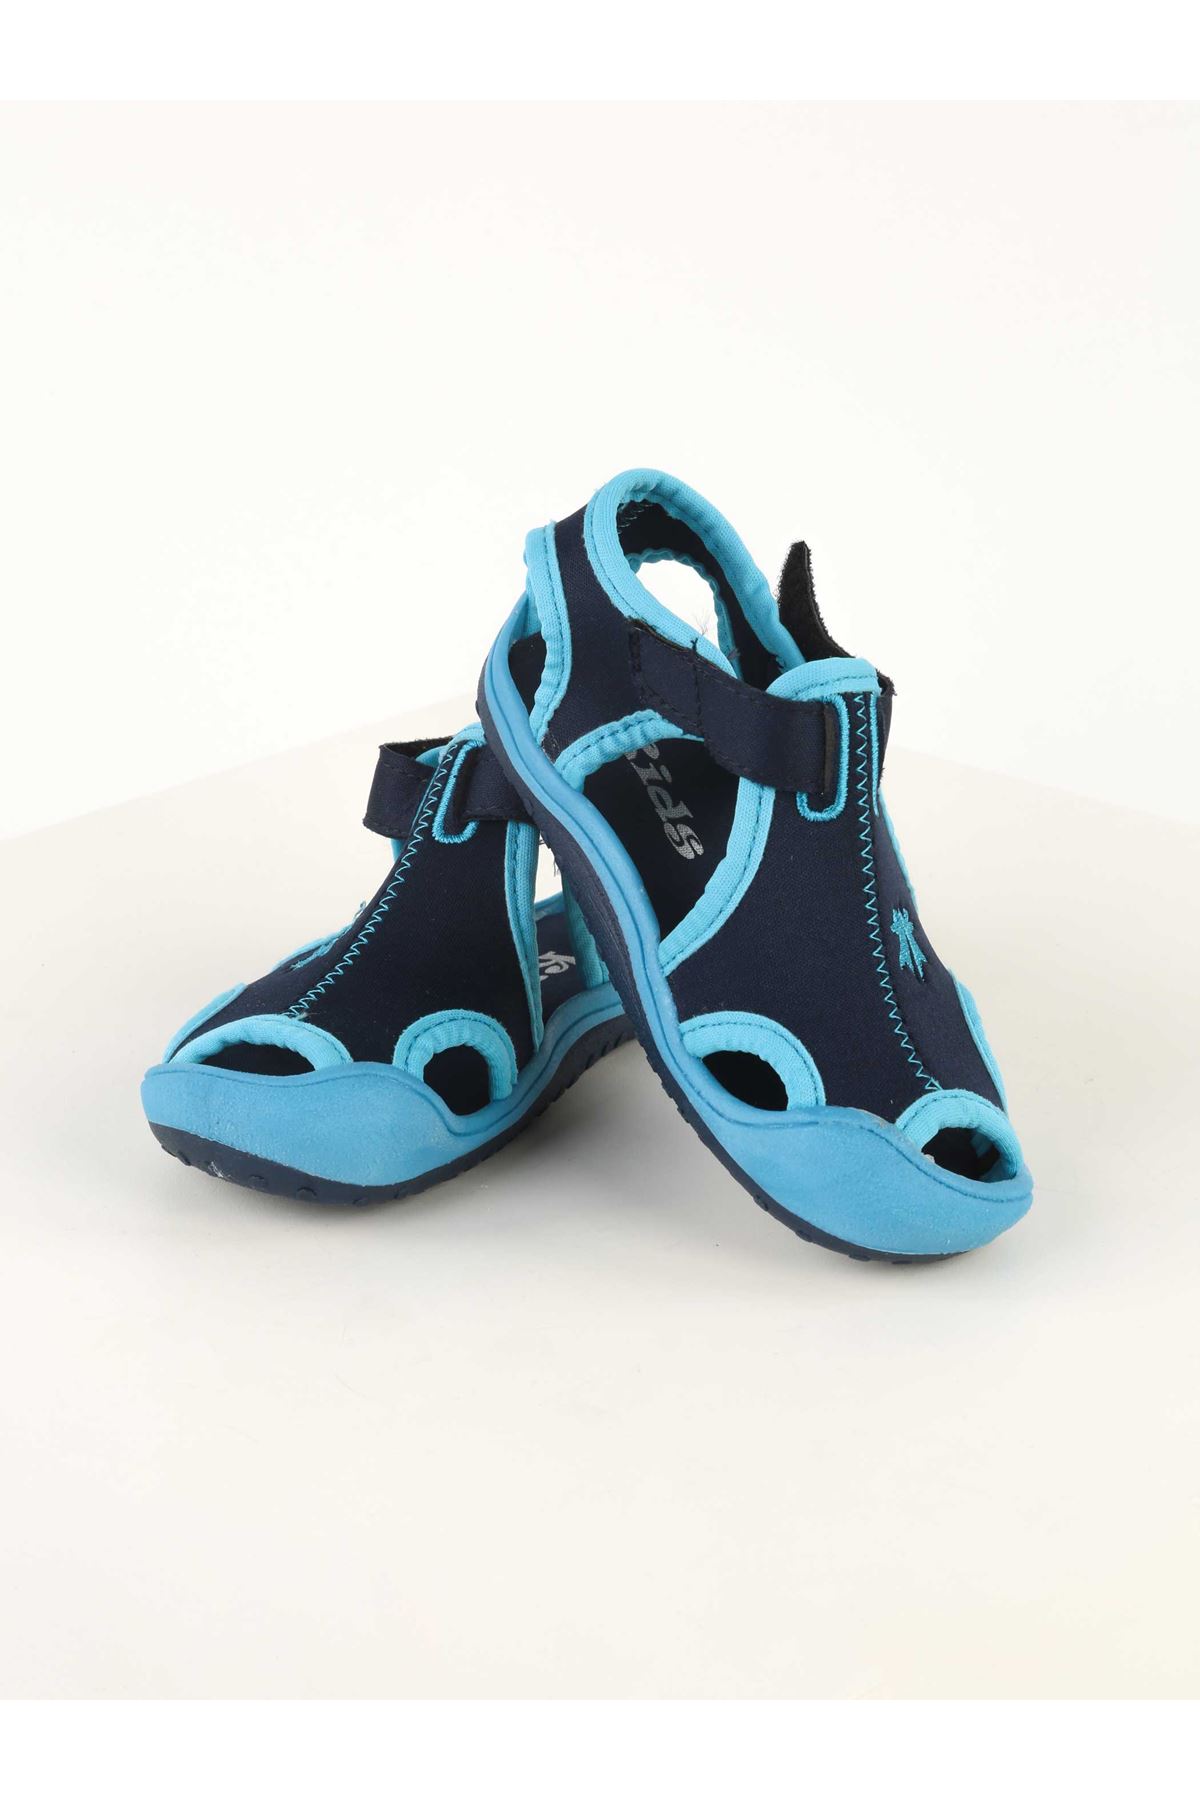 Modakids - Çocuk ve Bebek Giyim-Blue baby boy summer sandals nursery ...